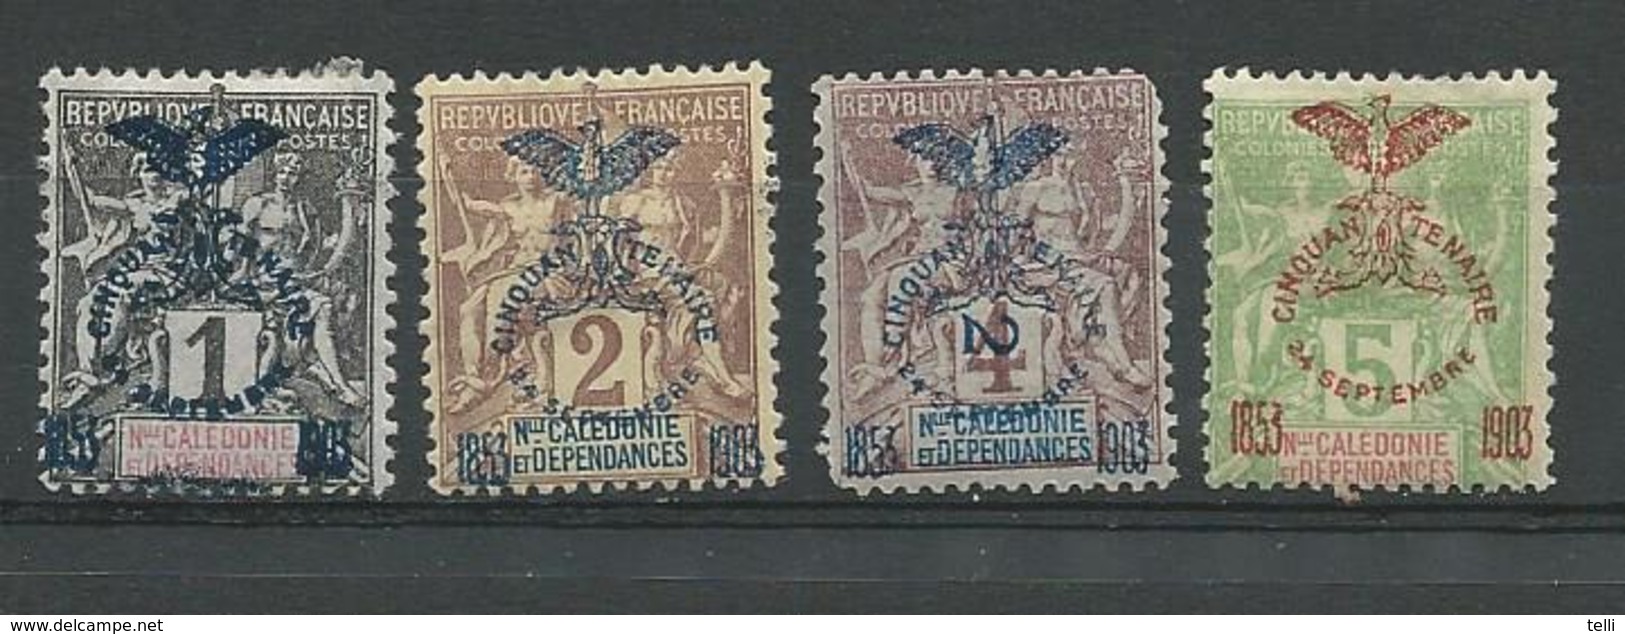 NOUVELLE CALÉDONIE Scott 66, 67, 68, 70 Yvert 67, 68, 69, 71 (4) * Cote 19,50 $1903 - Unused Stamps